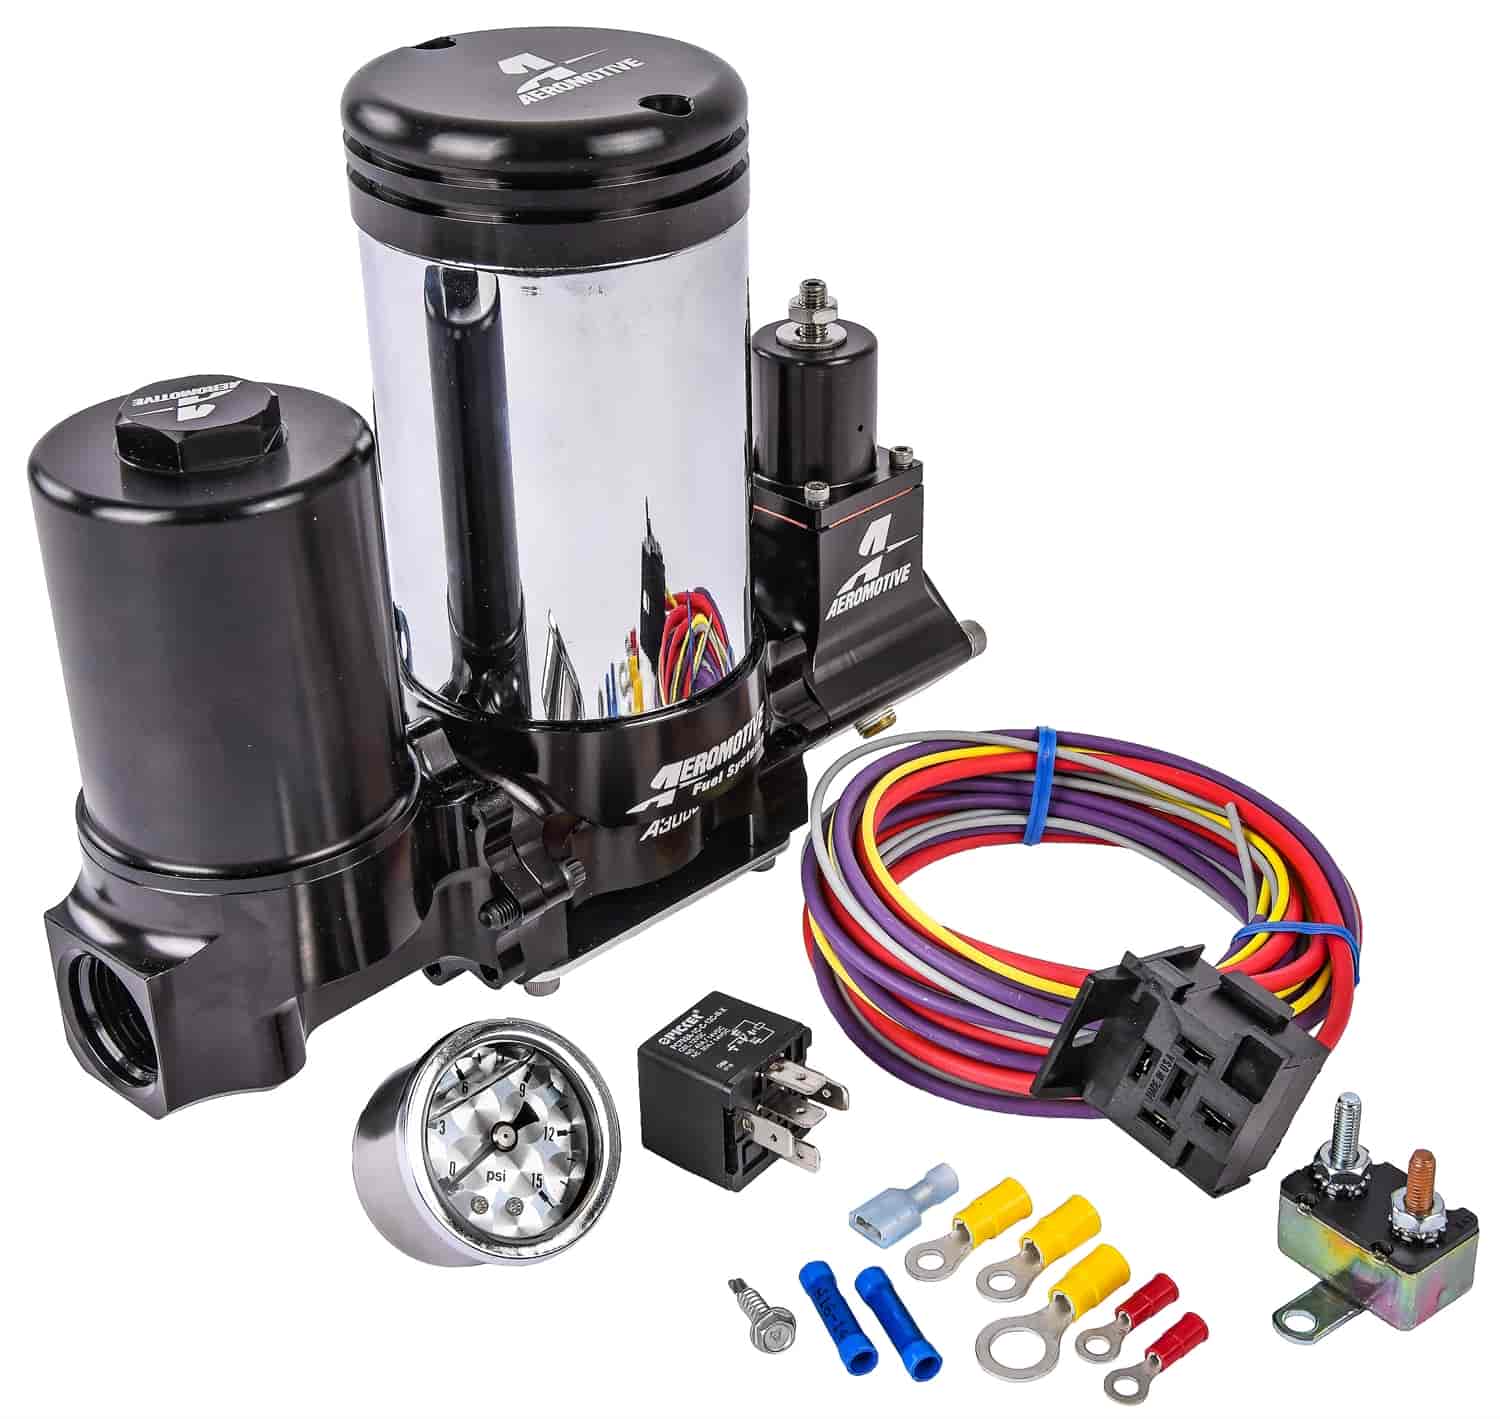 A3000 Fuel Pump Kit Includes: Aeromotive Fuel Pump Kit